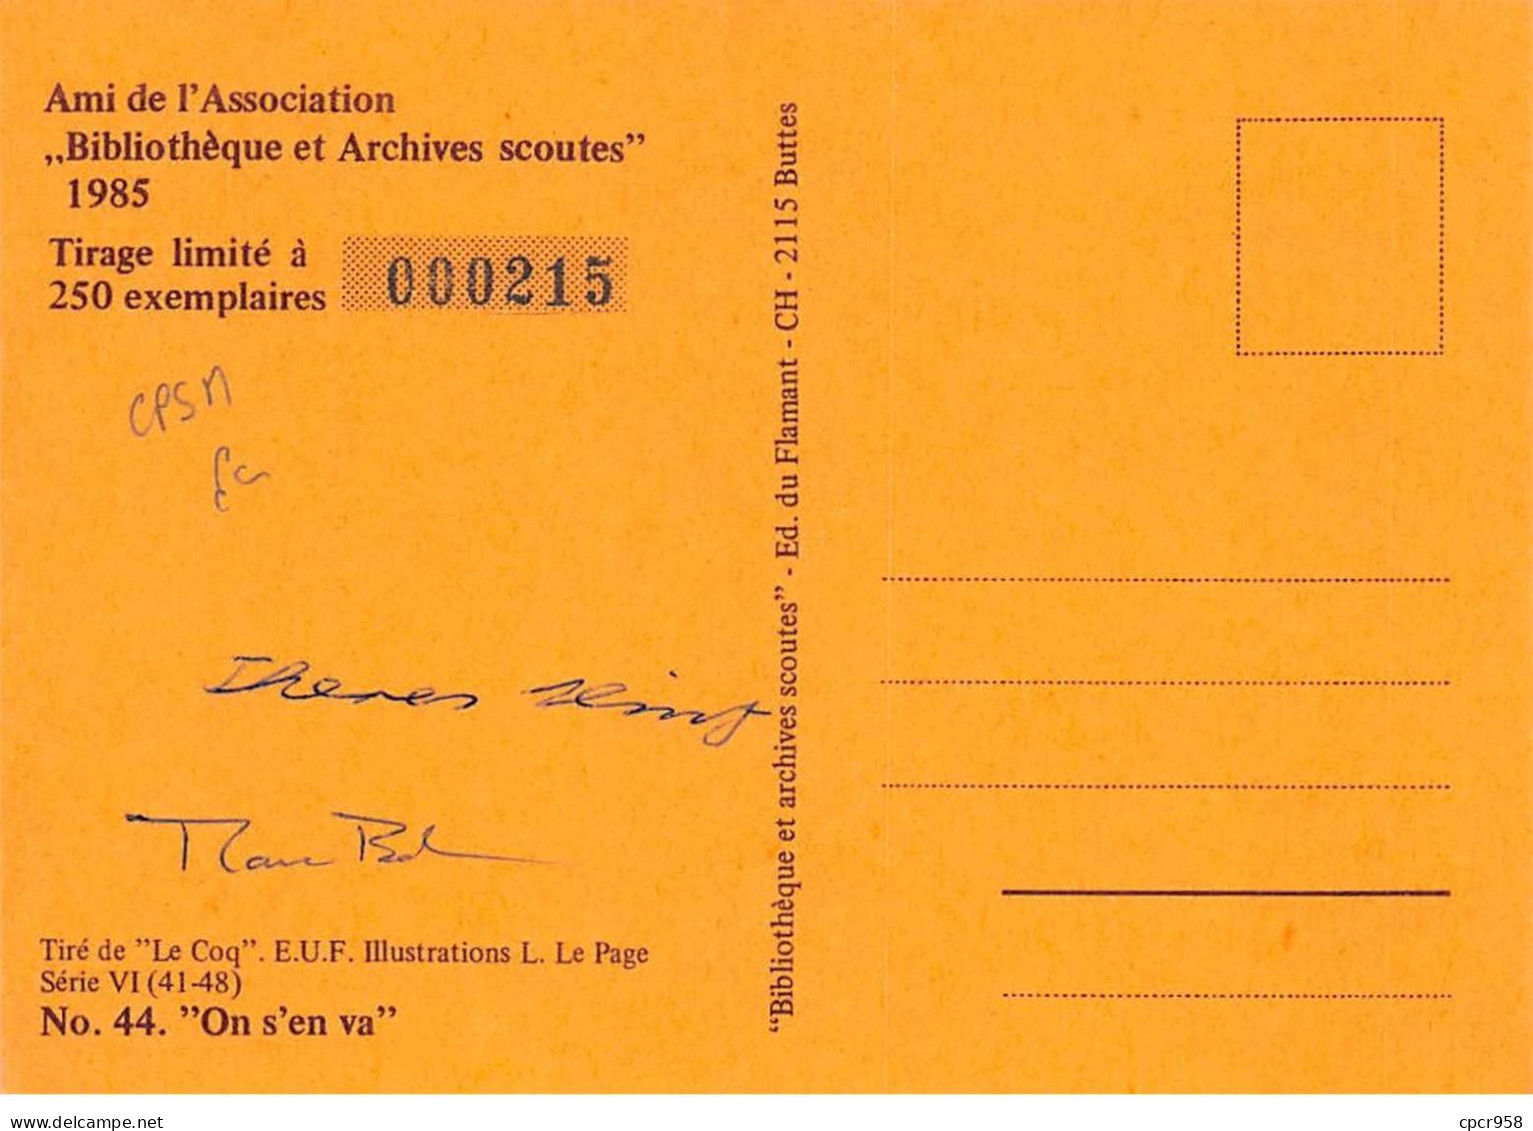 SCOUTISME - SAN36109 - Ami De L'Association Bibliothèque Et Archives Scoutes 1985 - N°44 "On S'en Va" - CPSM 15x10 Cm - Scouting